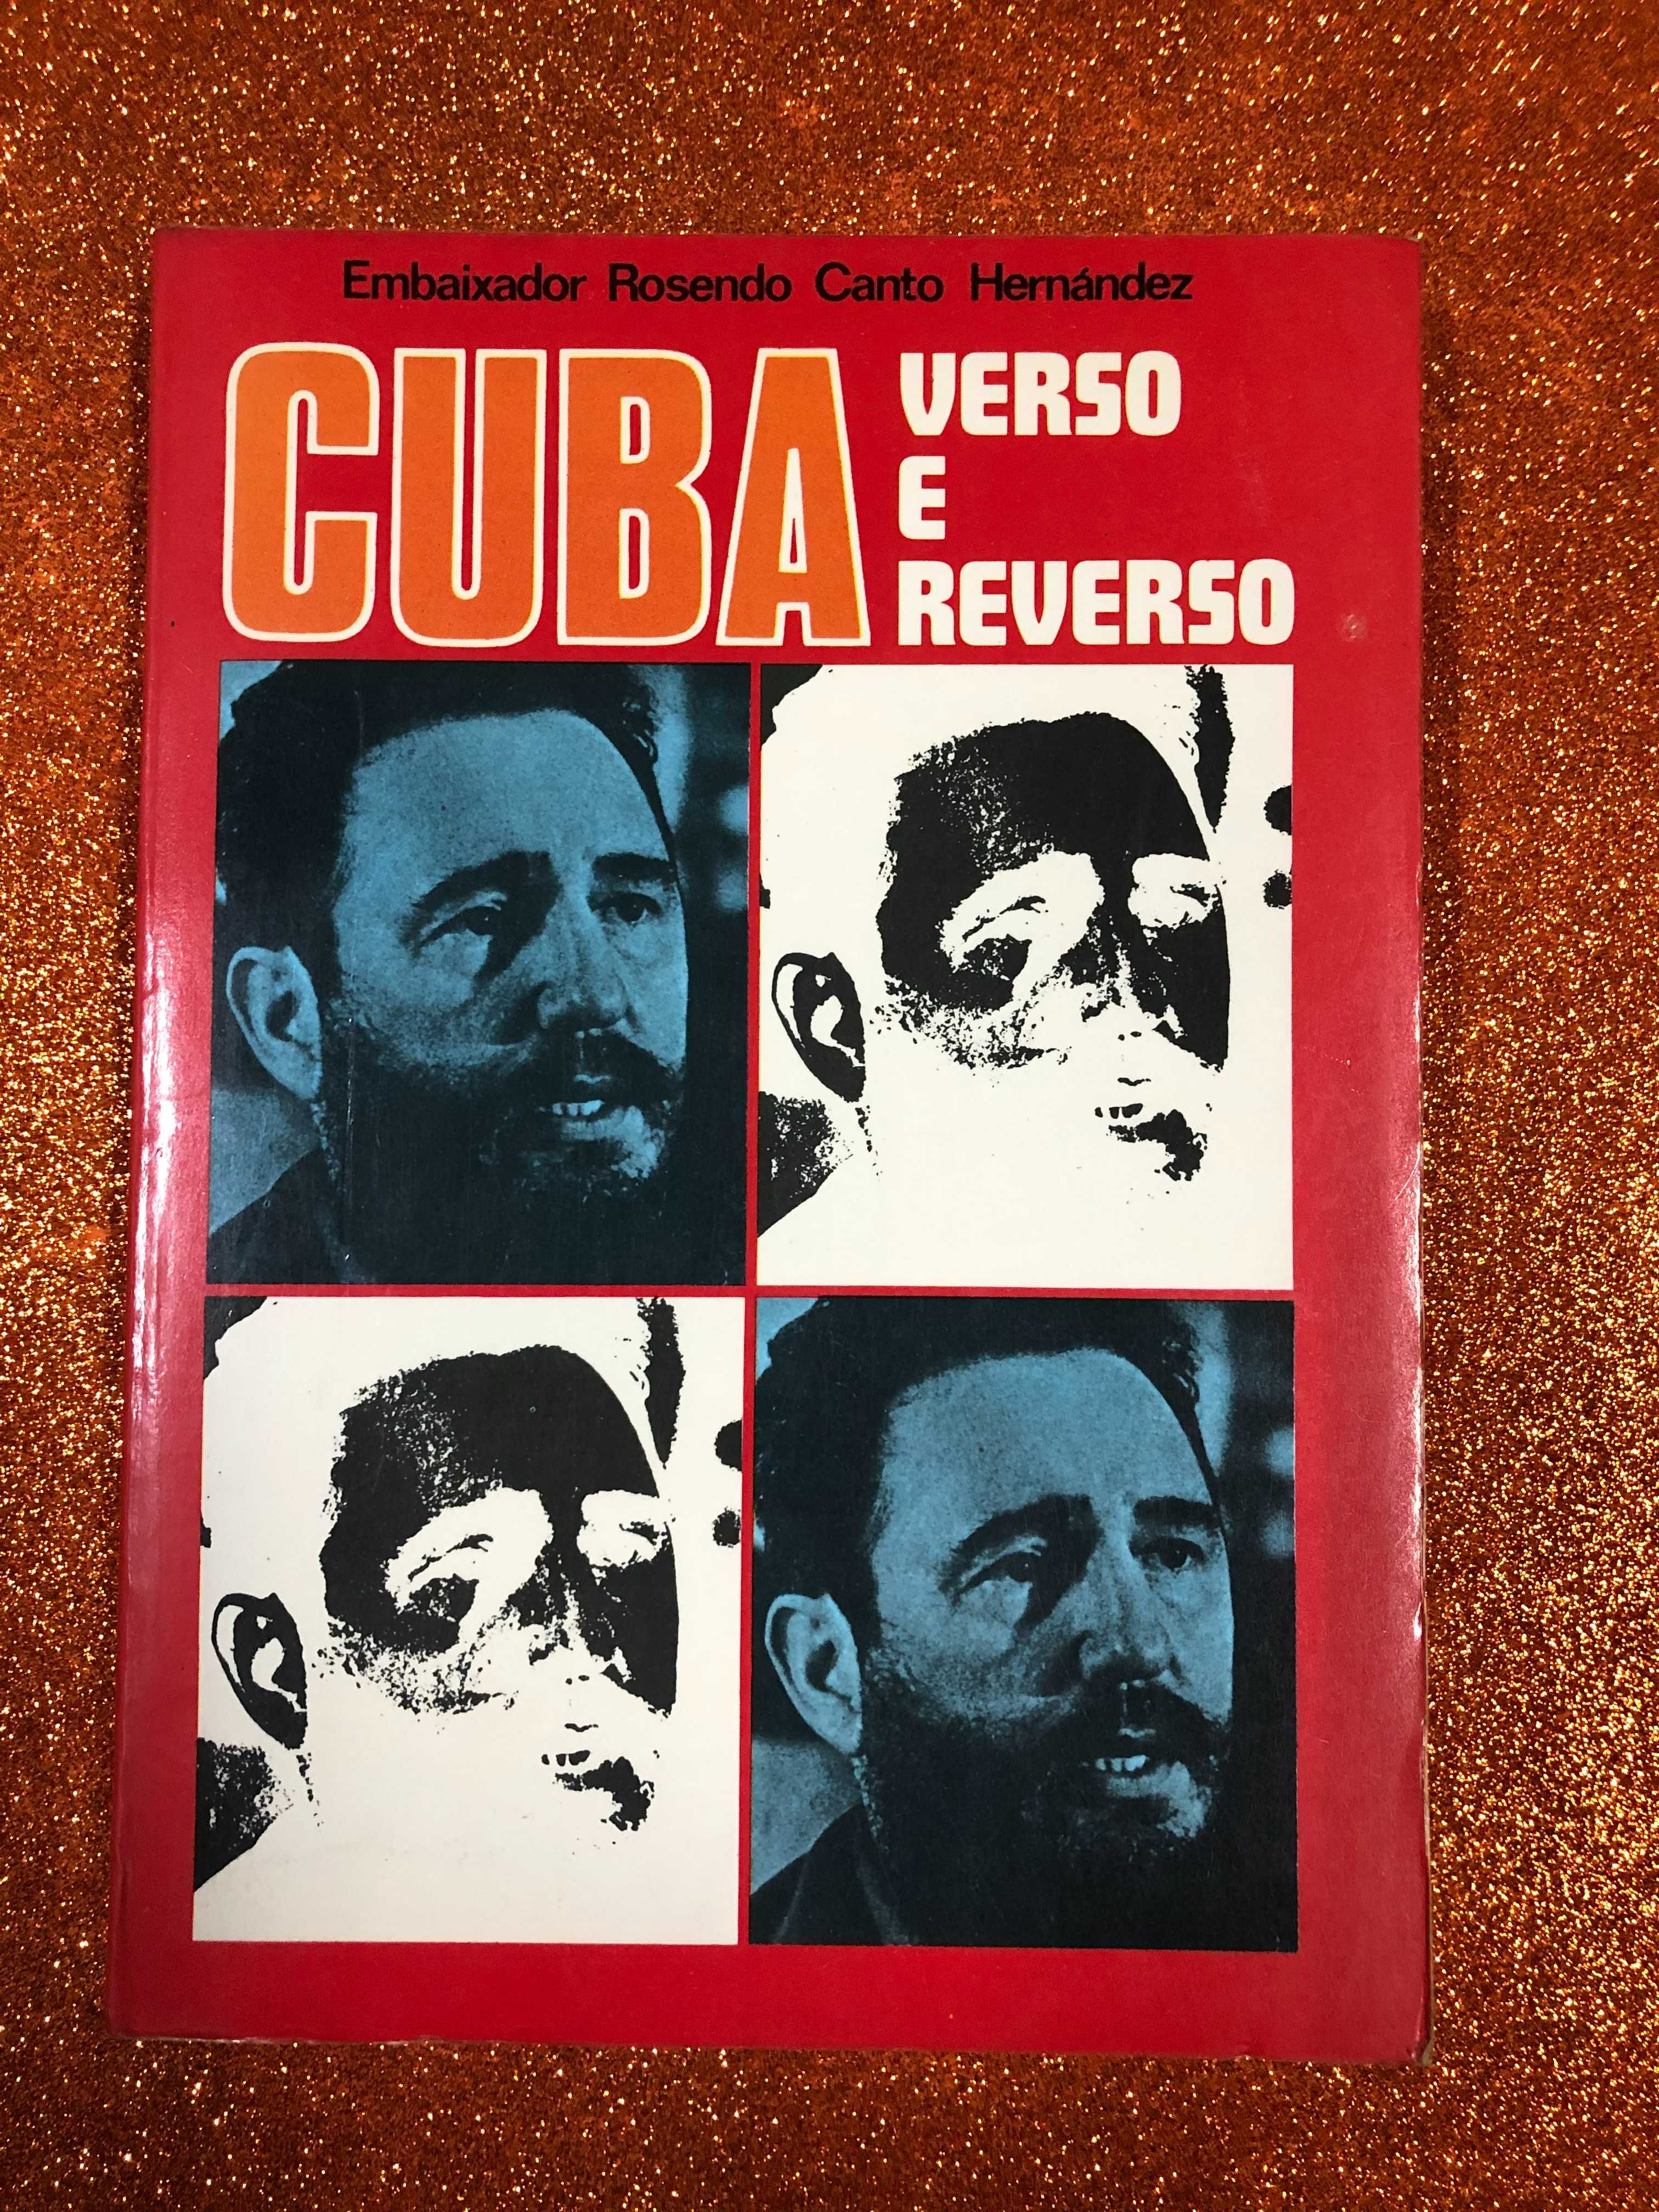 Cuba, verso e reverso - Embaixador Rosendo Canto Hernández